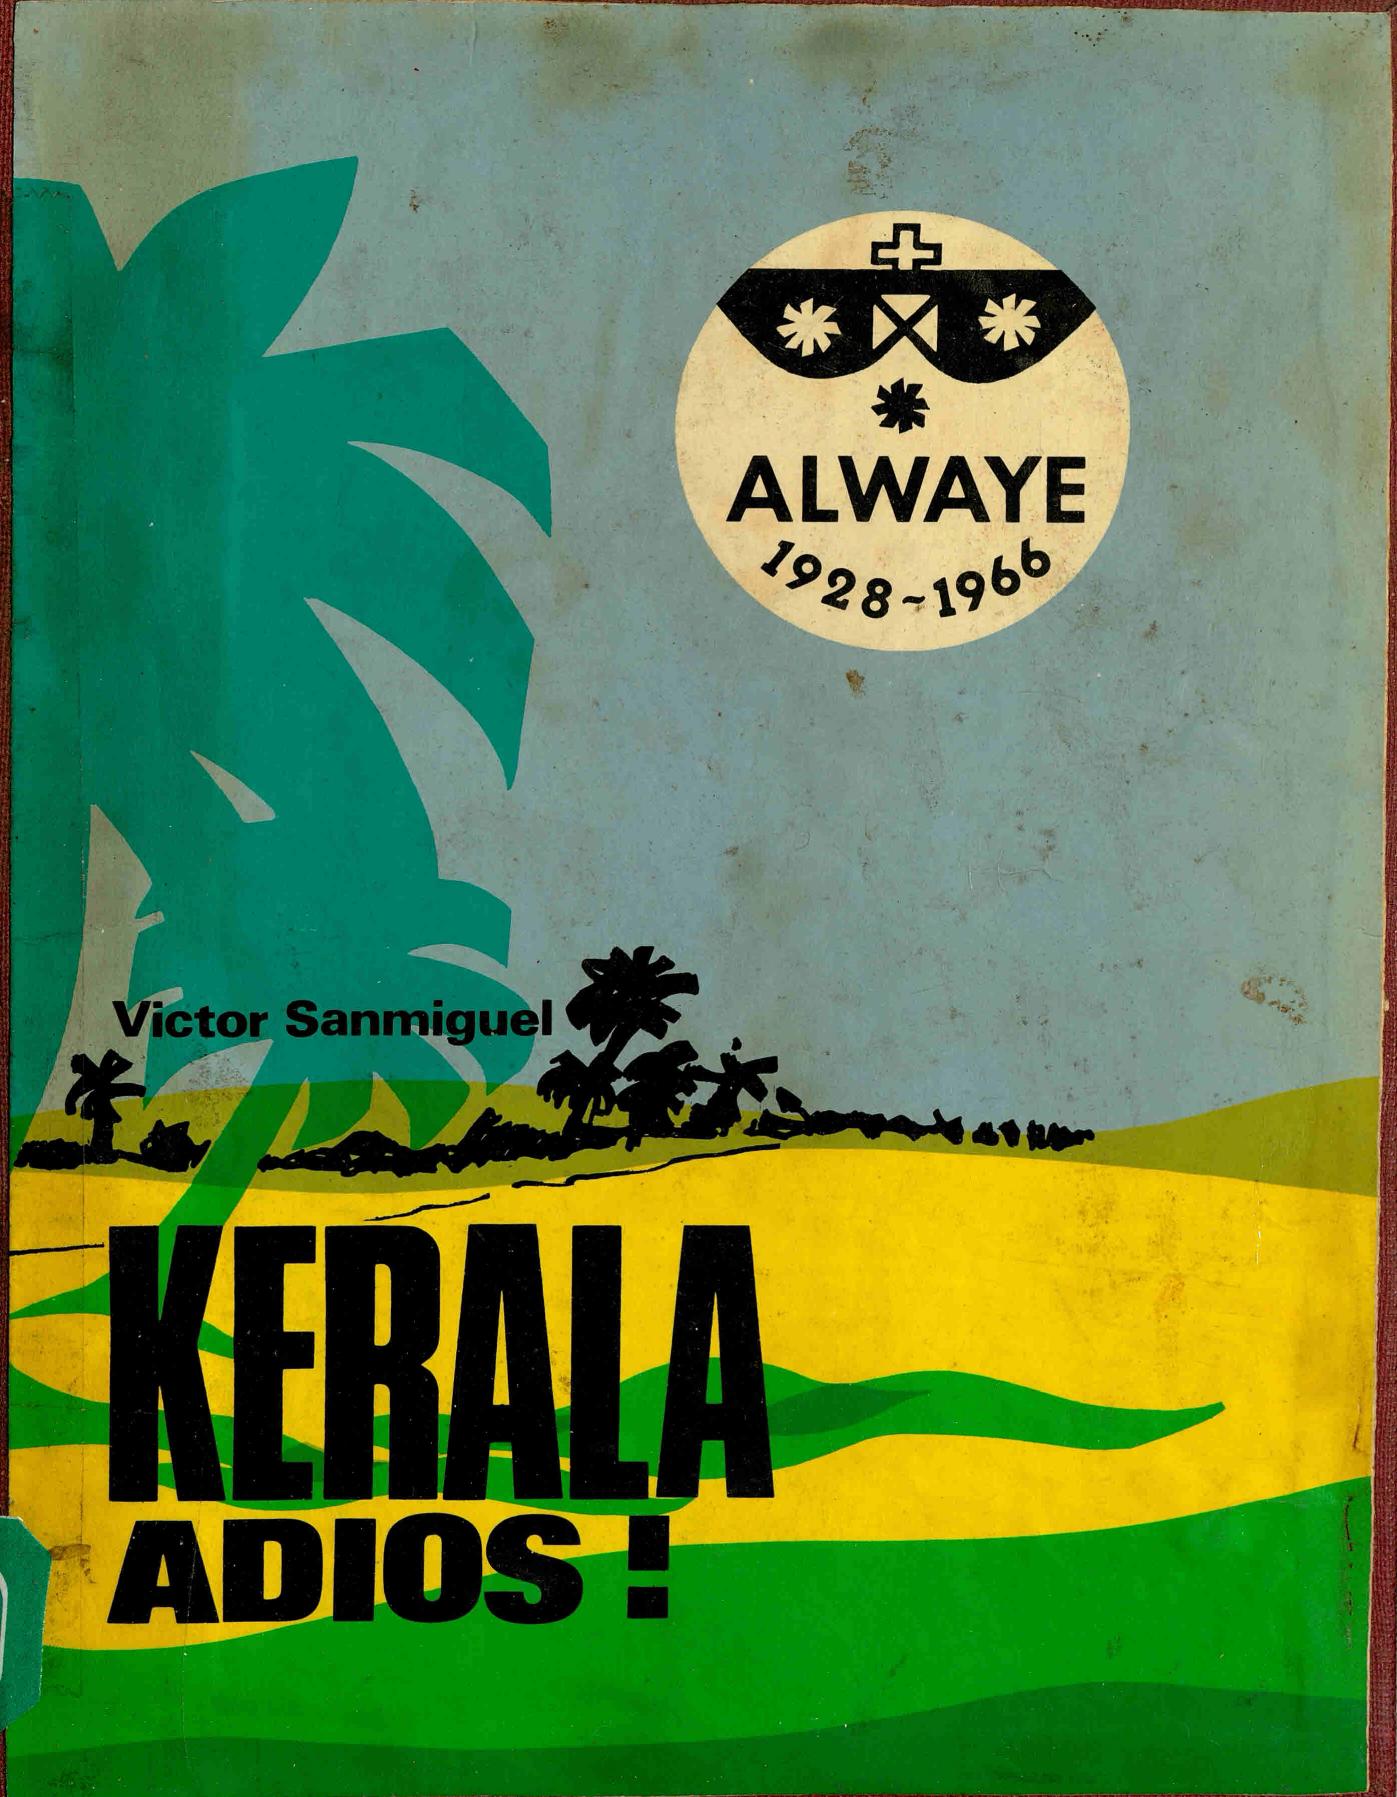 1978 - Kerala Adios - Victor Sanmiguel